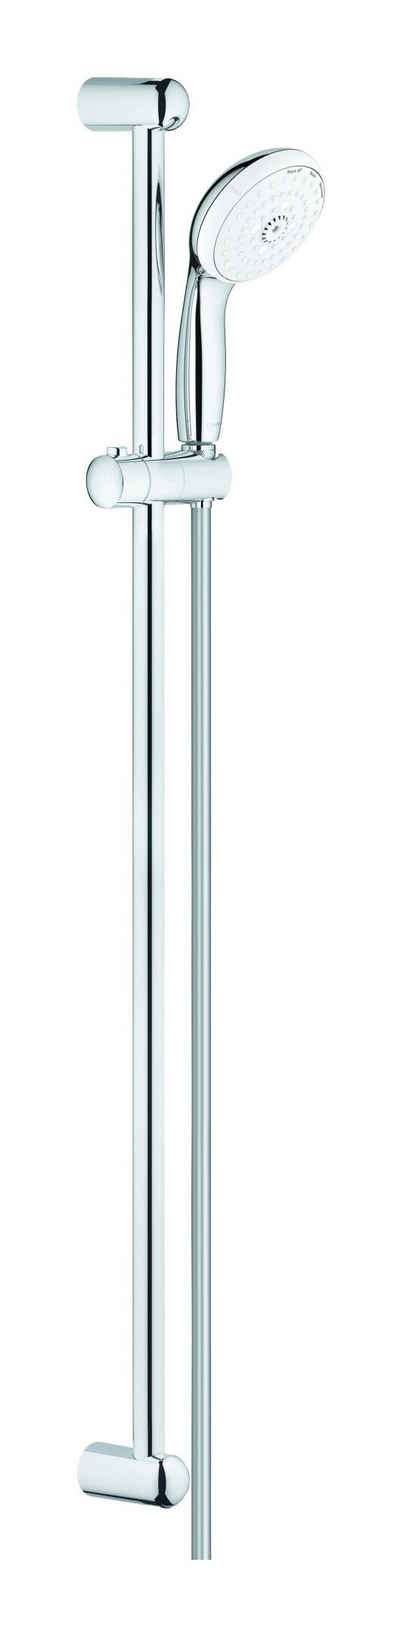 Grohe Stangenbrause-Set Tempesta 100, Höhe 92 cm, 3 Strahlart(en), Brausestangenset - Chrom